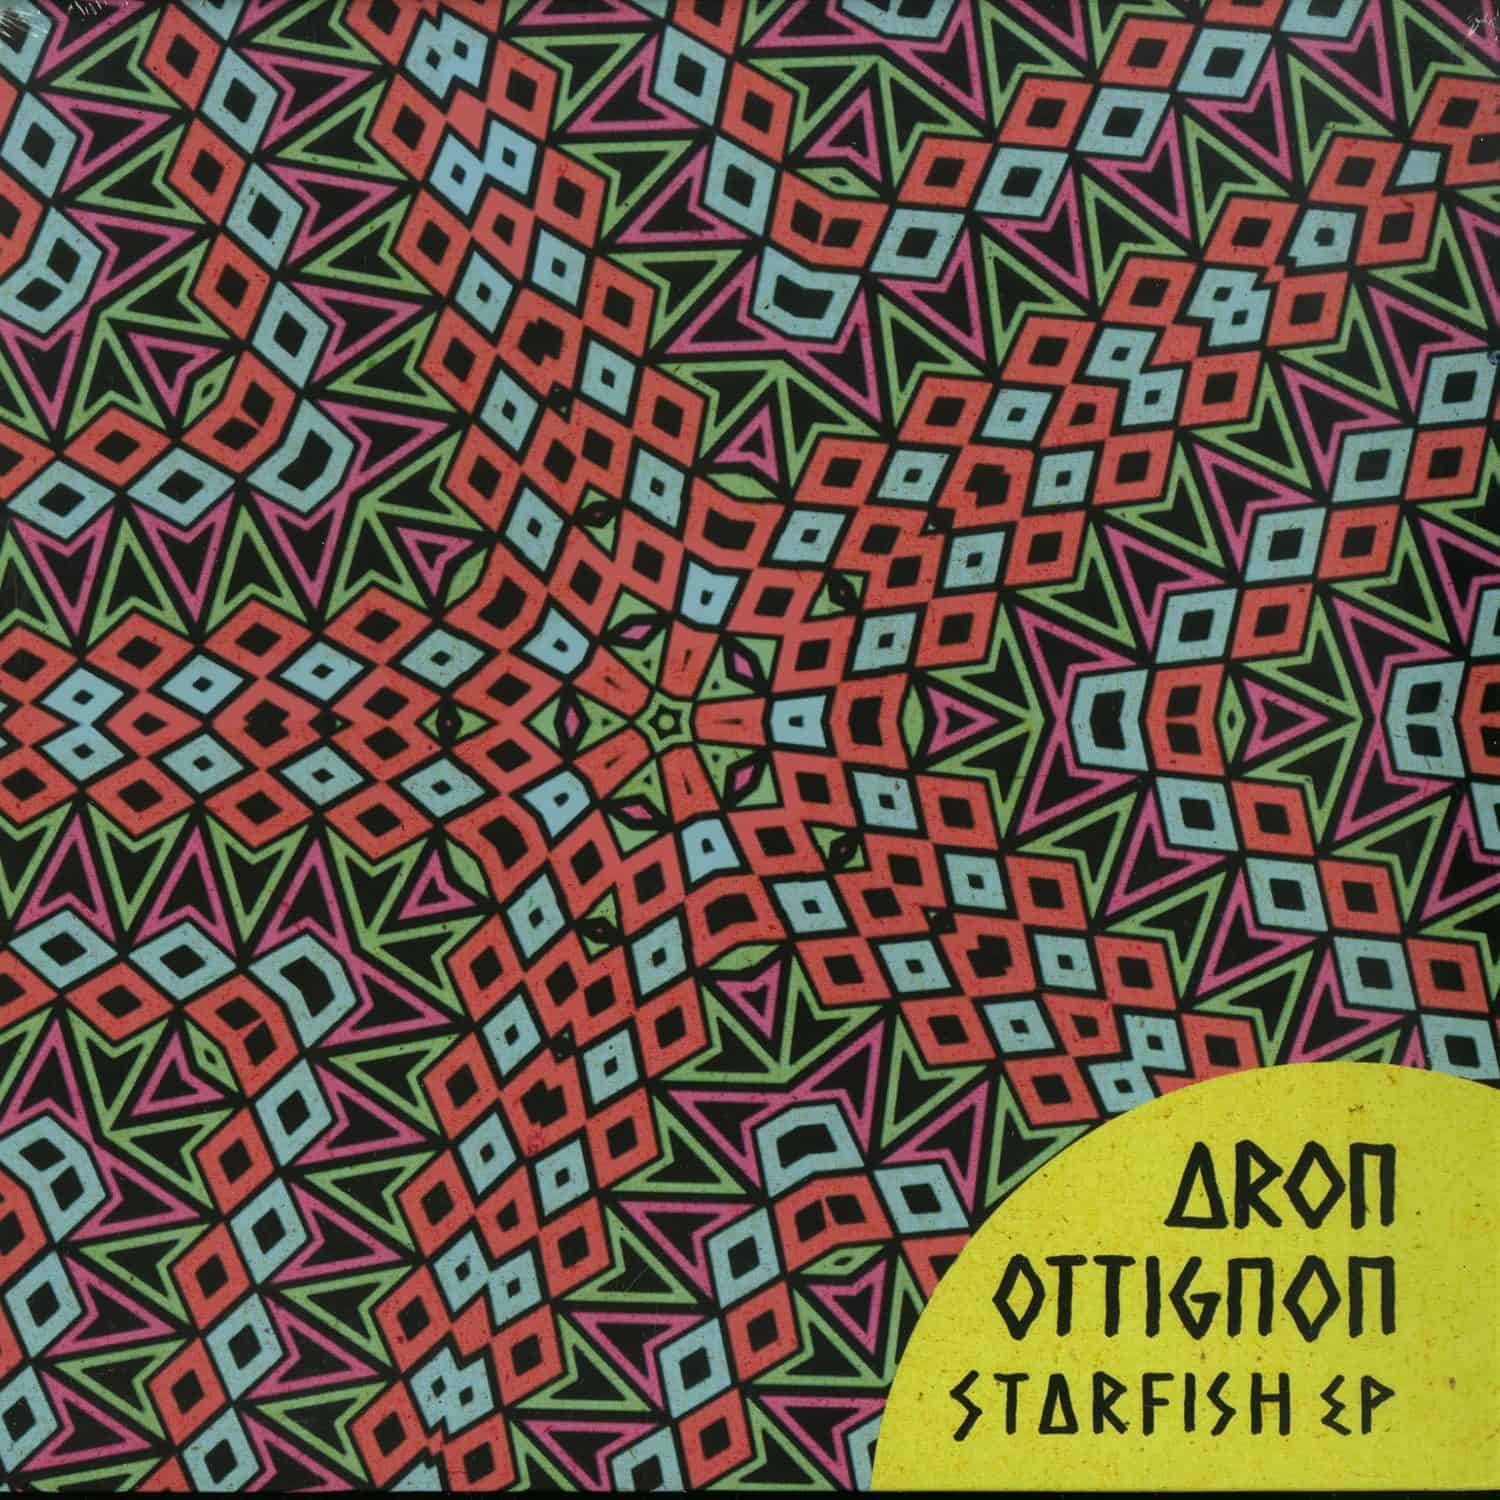 Aron Ottignon - STARFISH EP 